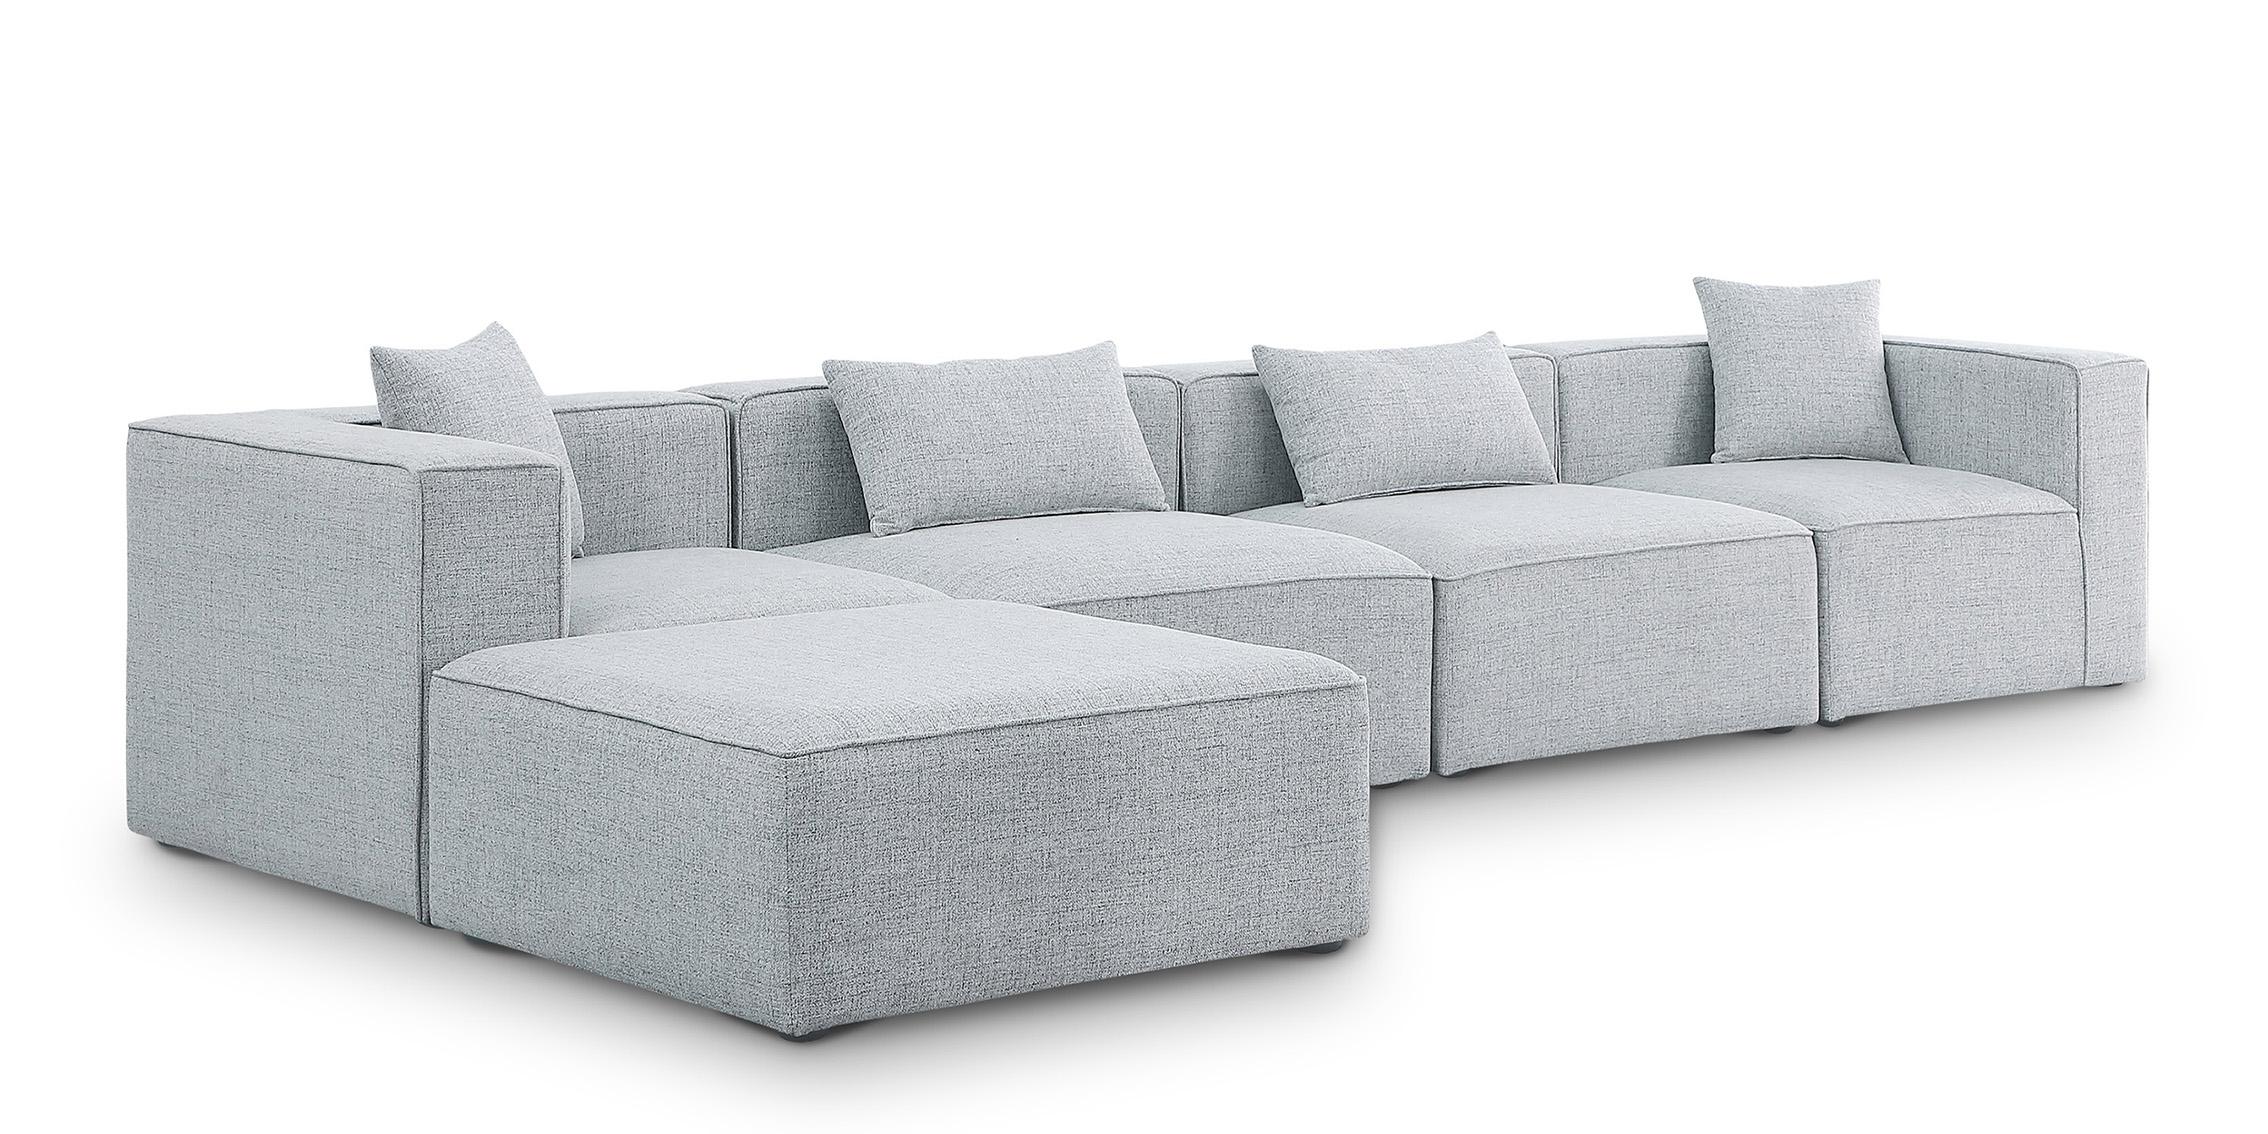 Contemporary, Modern Modular Sectional Sofa CUBE 630Grey-Sec5A 630Grey-Sec5A in Gray Linen